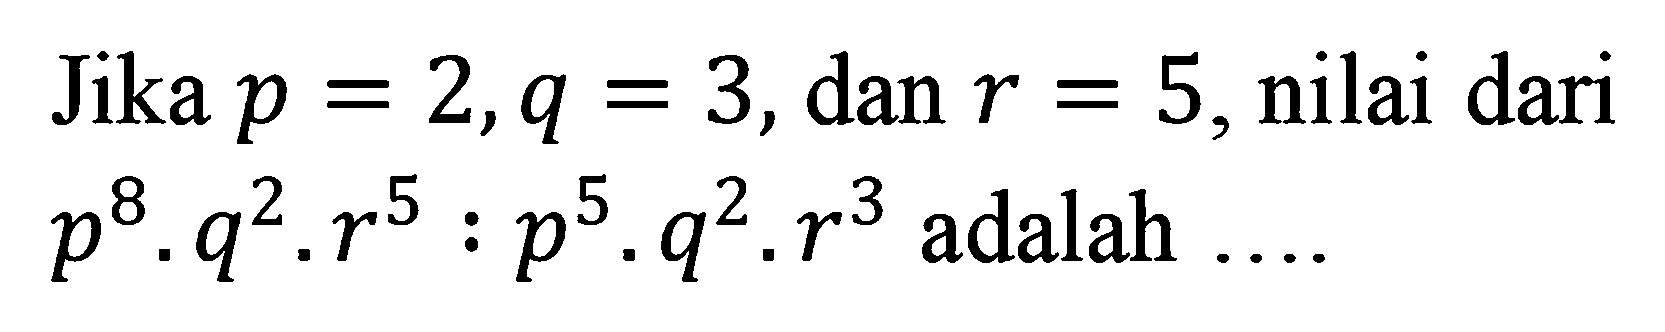 Jika p = 2, q = 3, dan r = 5, nilai dari p^8 . q^2 . r^5 : p^5 . q^2 . r^3 adalah ....